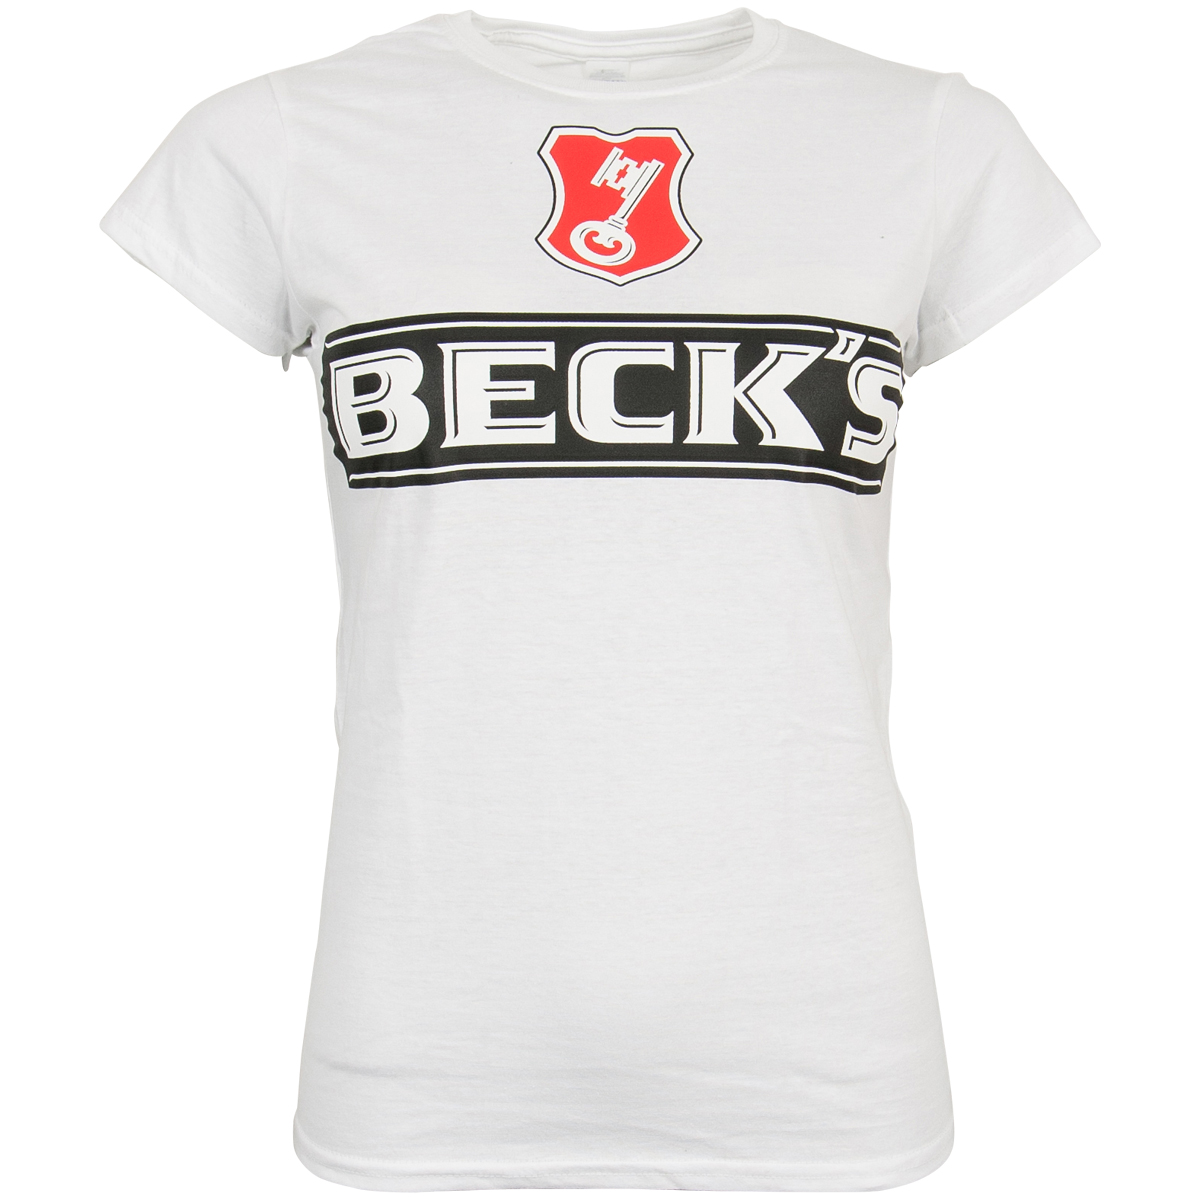 Beck's - Damen T-Shirt Logo - weiß